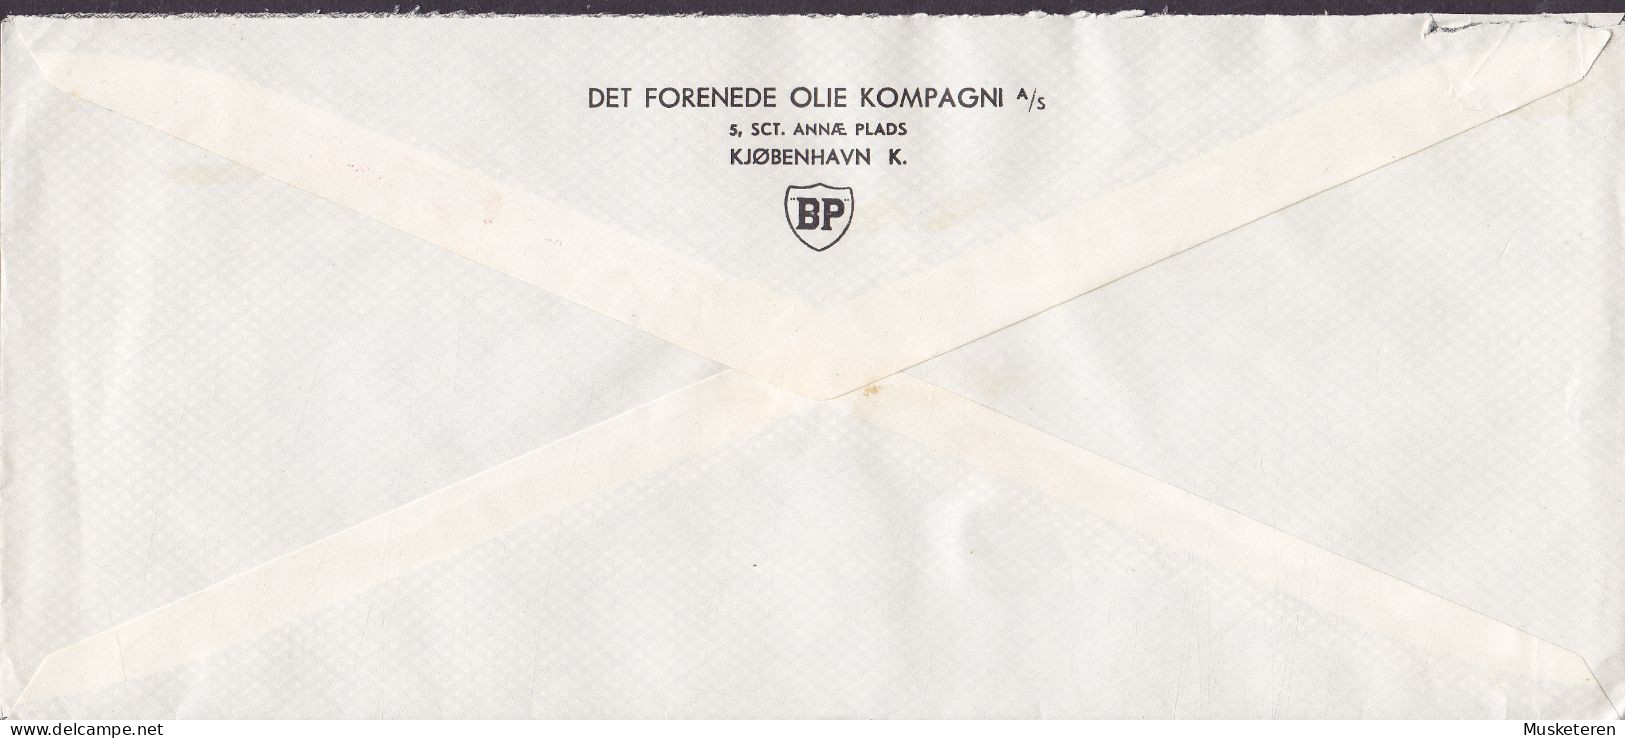 Denmark DET FORENEDE OLIE KOMPAGNI British Petrol Cachet ATM Cancel '399', KØBENHAVN 1948 Meter Cancel Cover (2 Scans) - Frankeermachines (EMA)